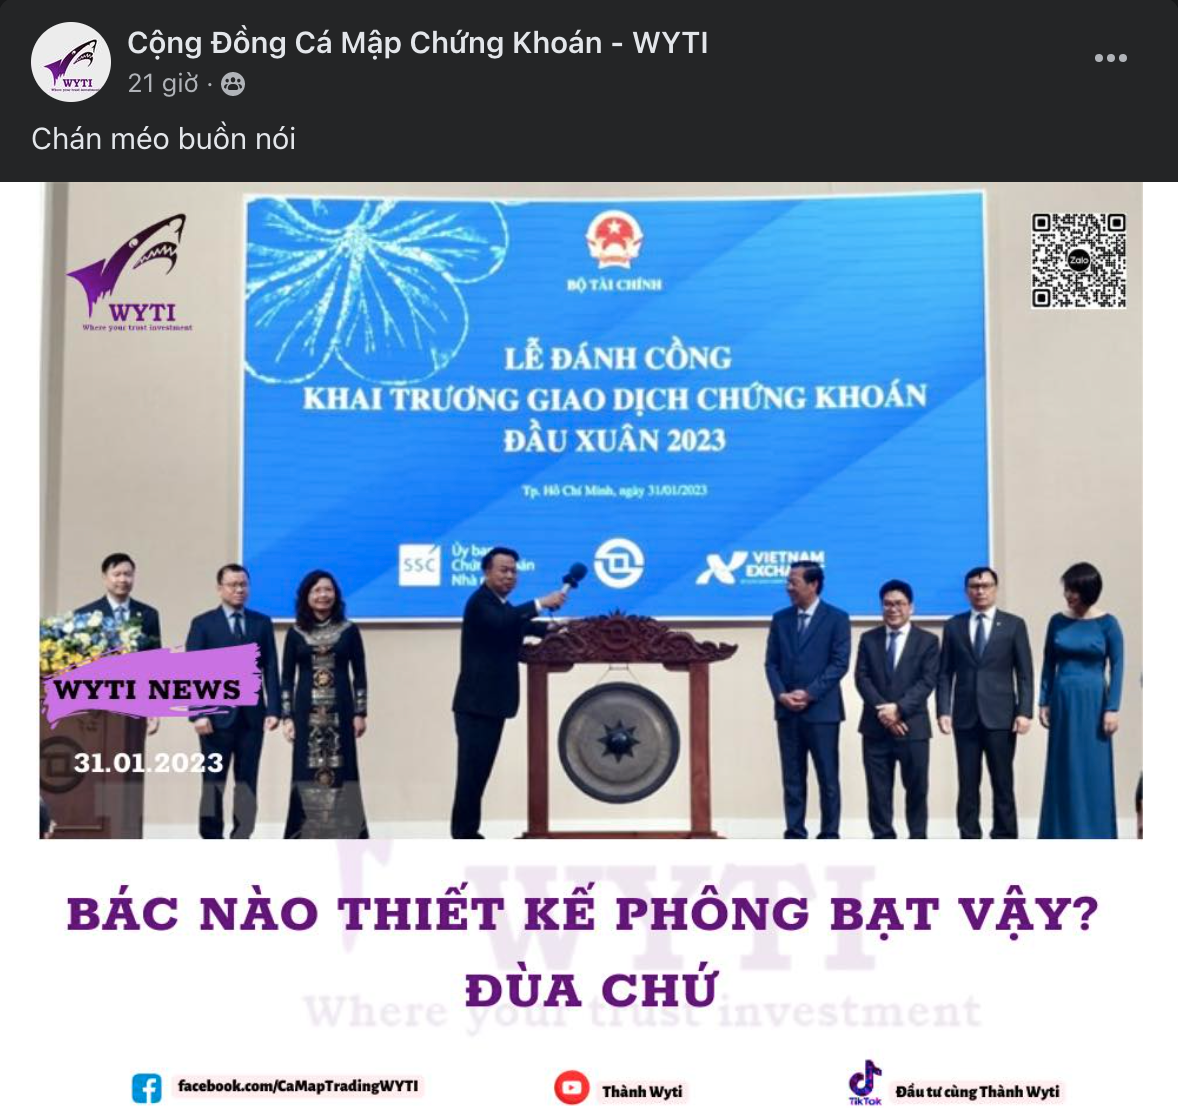 Diem-nong-MXH-ngay-01-02-Cong-dong-Trader-Viet-Nam-TraderTop5.png